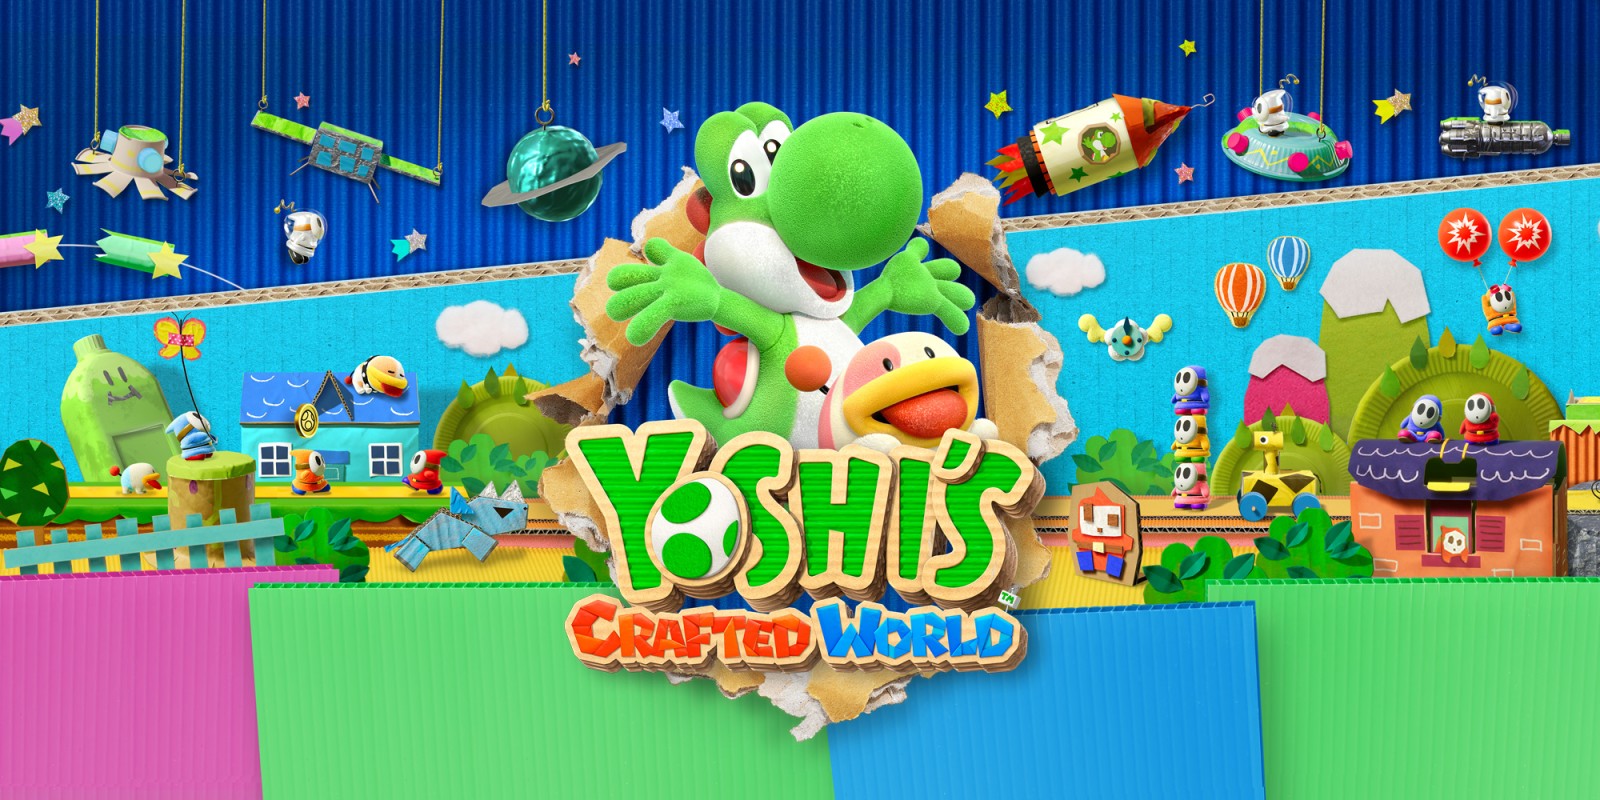 Yoshis Crafted World топ игры sega / сега онлайн и денди играть